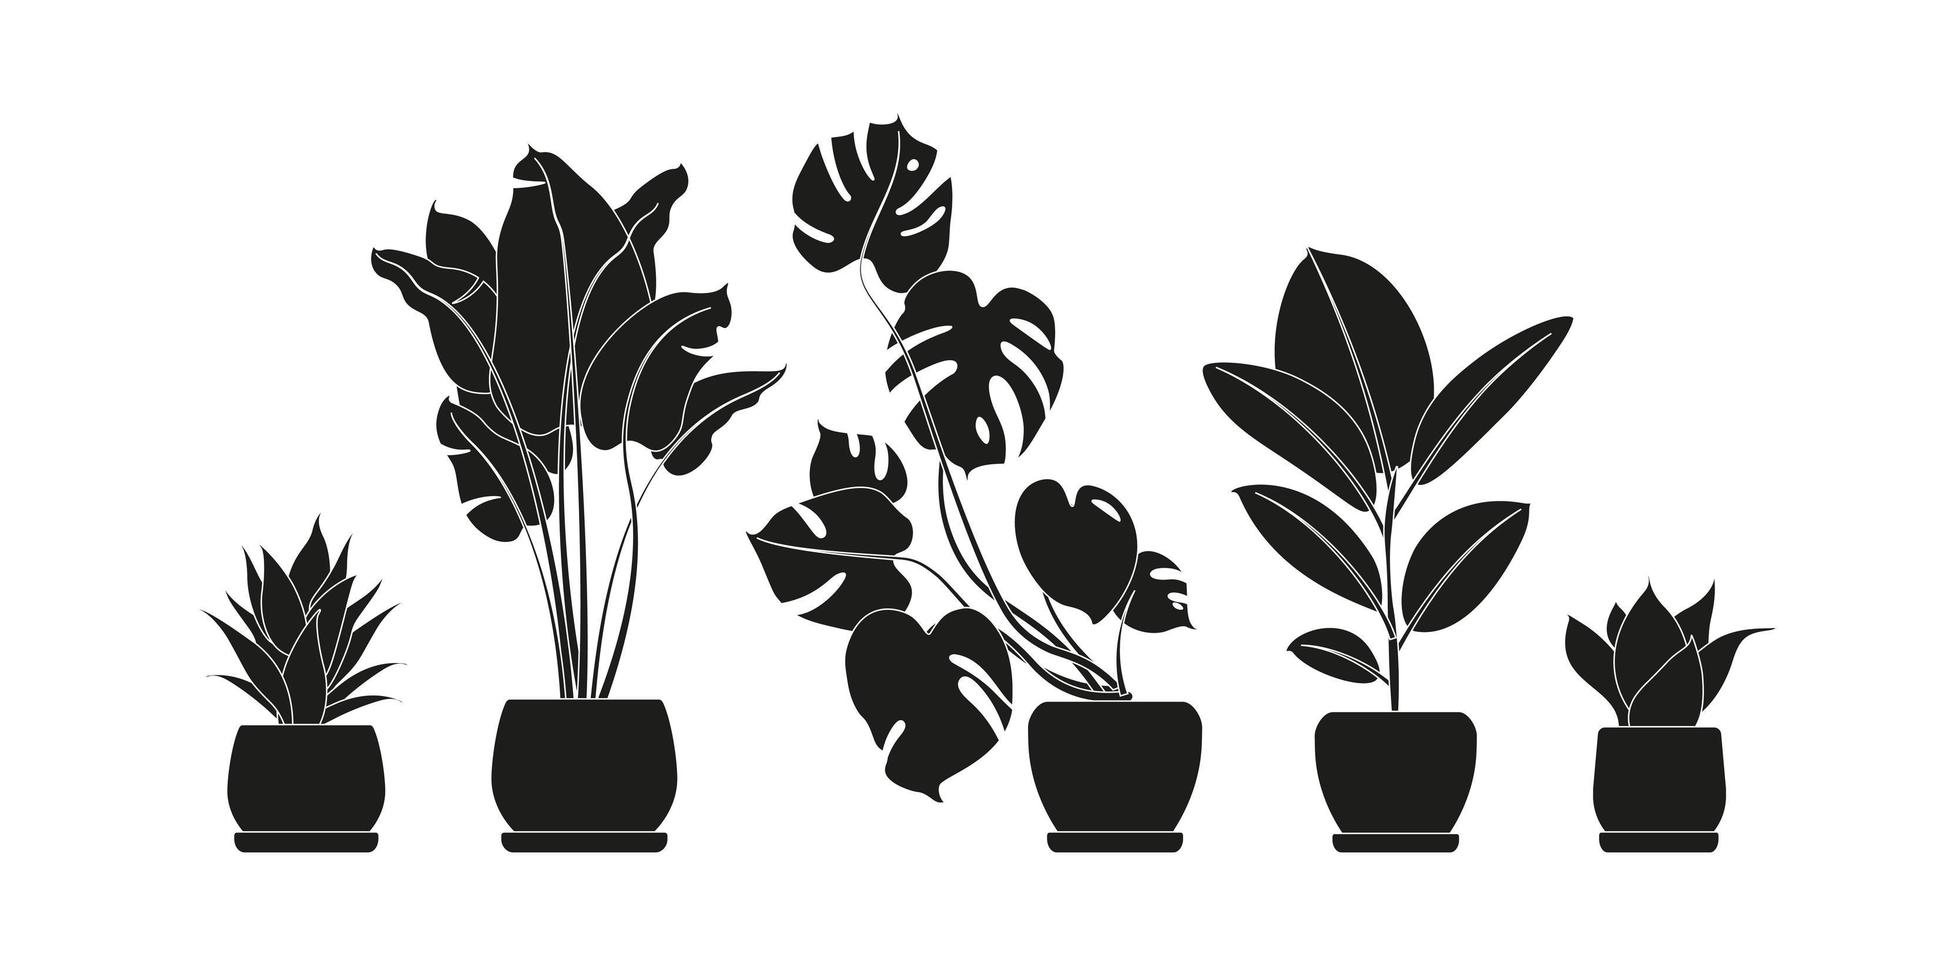 colección de siluetas de plantas de interior en color negro. plantas en macetas aisladas en blanco. Establecer plantas tropicales verdes. Decoración moderna para el hogar con plantas de interior, jardineras, cactus, hojas tropicales. vector